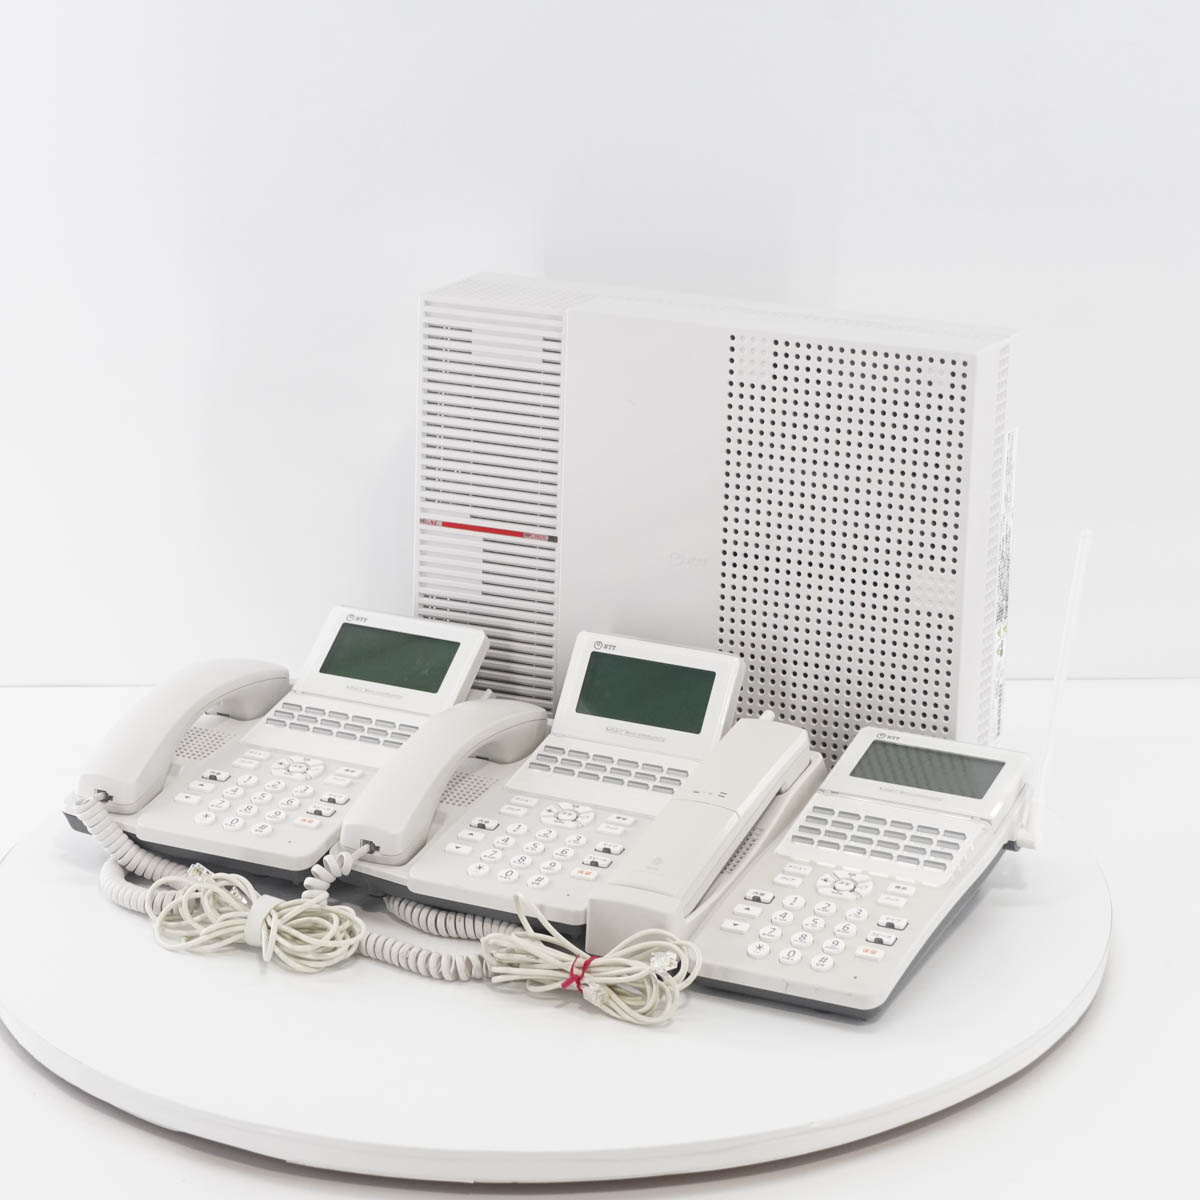 販売格安 中古美品 ビジネスフォン NTT 主装置 スマートネットコミュニティ αB1 B1-ME-(1) 電話機 A1-(18)STEL  ビジネスフォン FONDOBLAKA